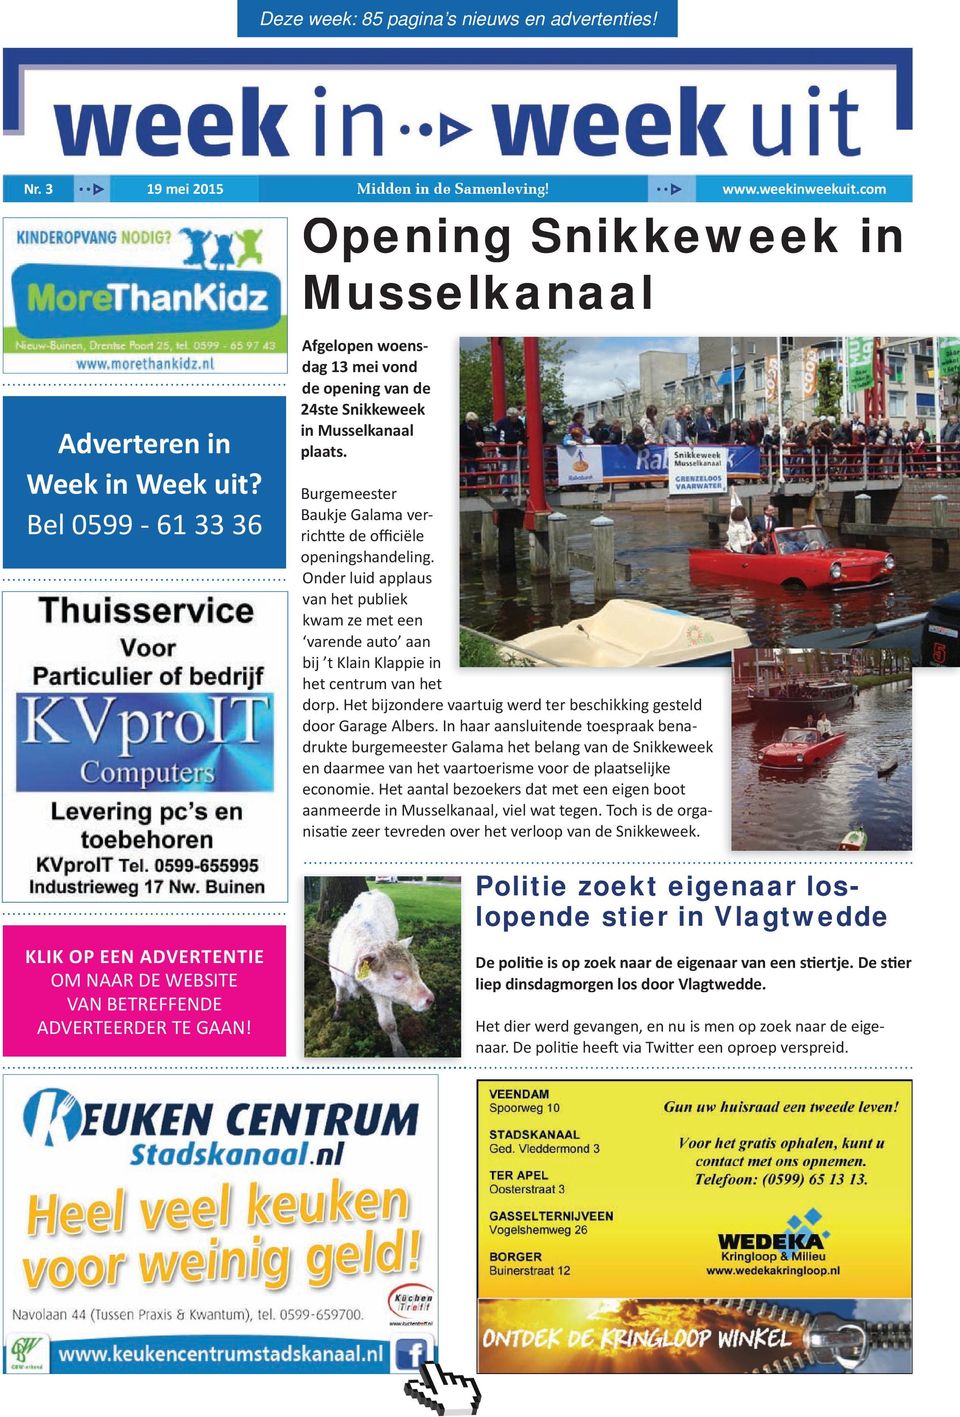 Opening Snikkeweek in Musselkanaal Afgelopen woensdag 13 mei vond de opening van de 24ste Snikkeweek in Musselkanaal plaats. burgemeester baukje galama verrichtte de officiële openingshandeling.